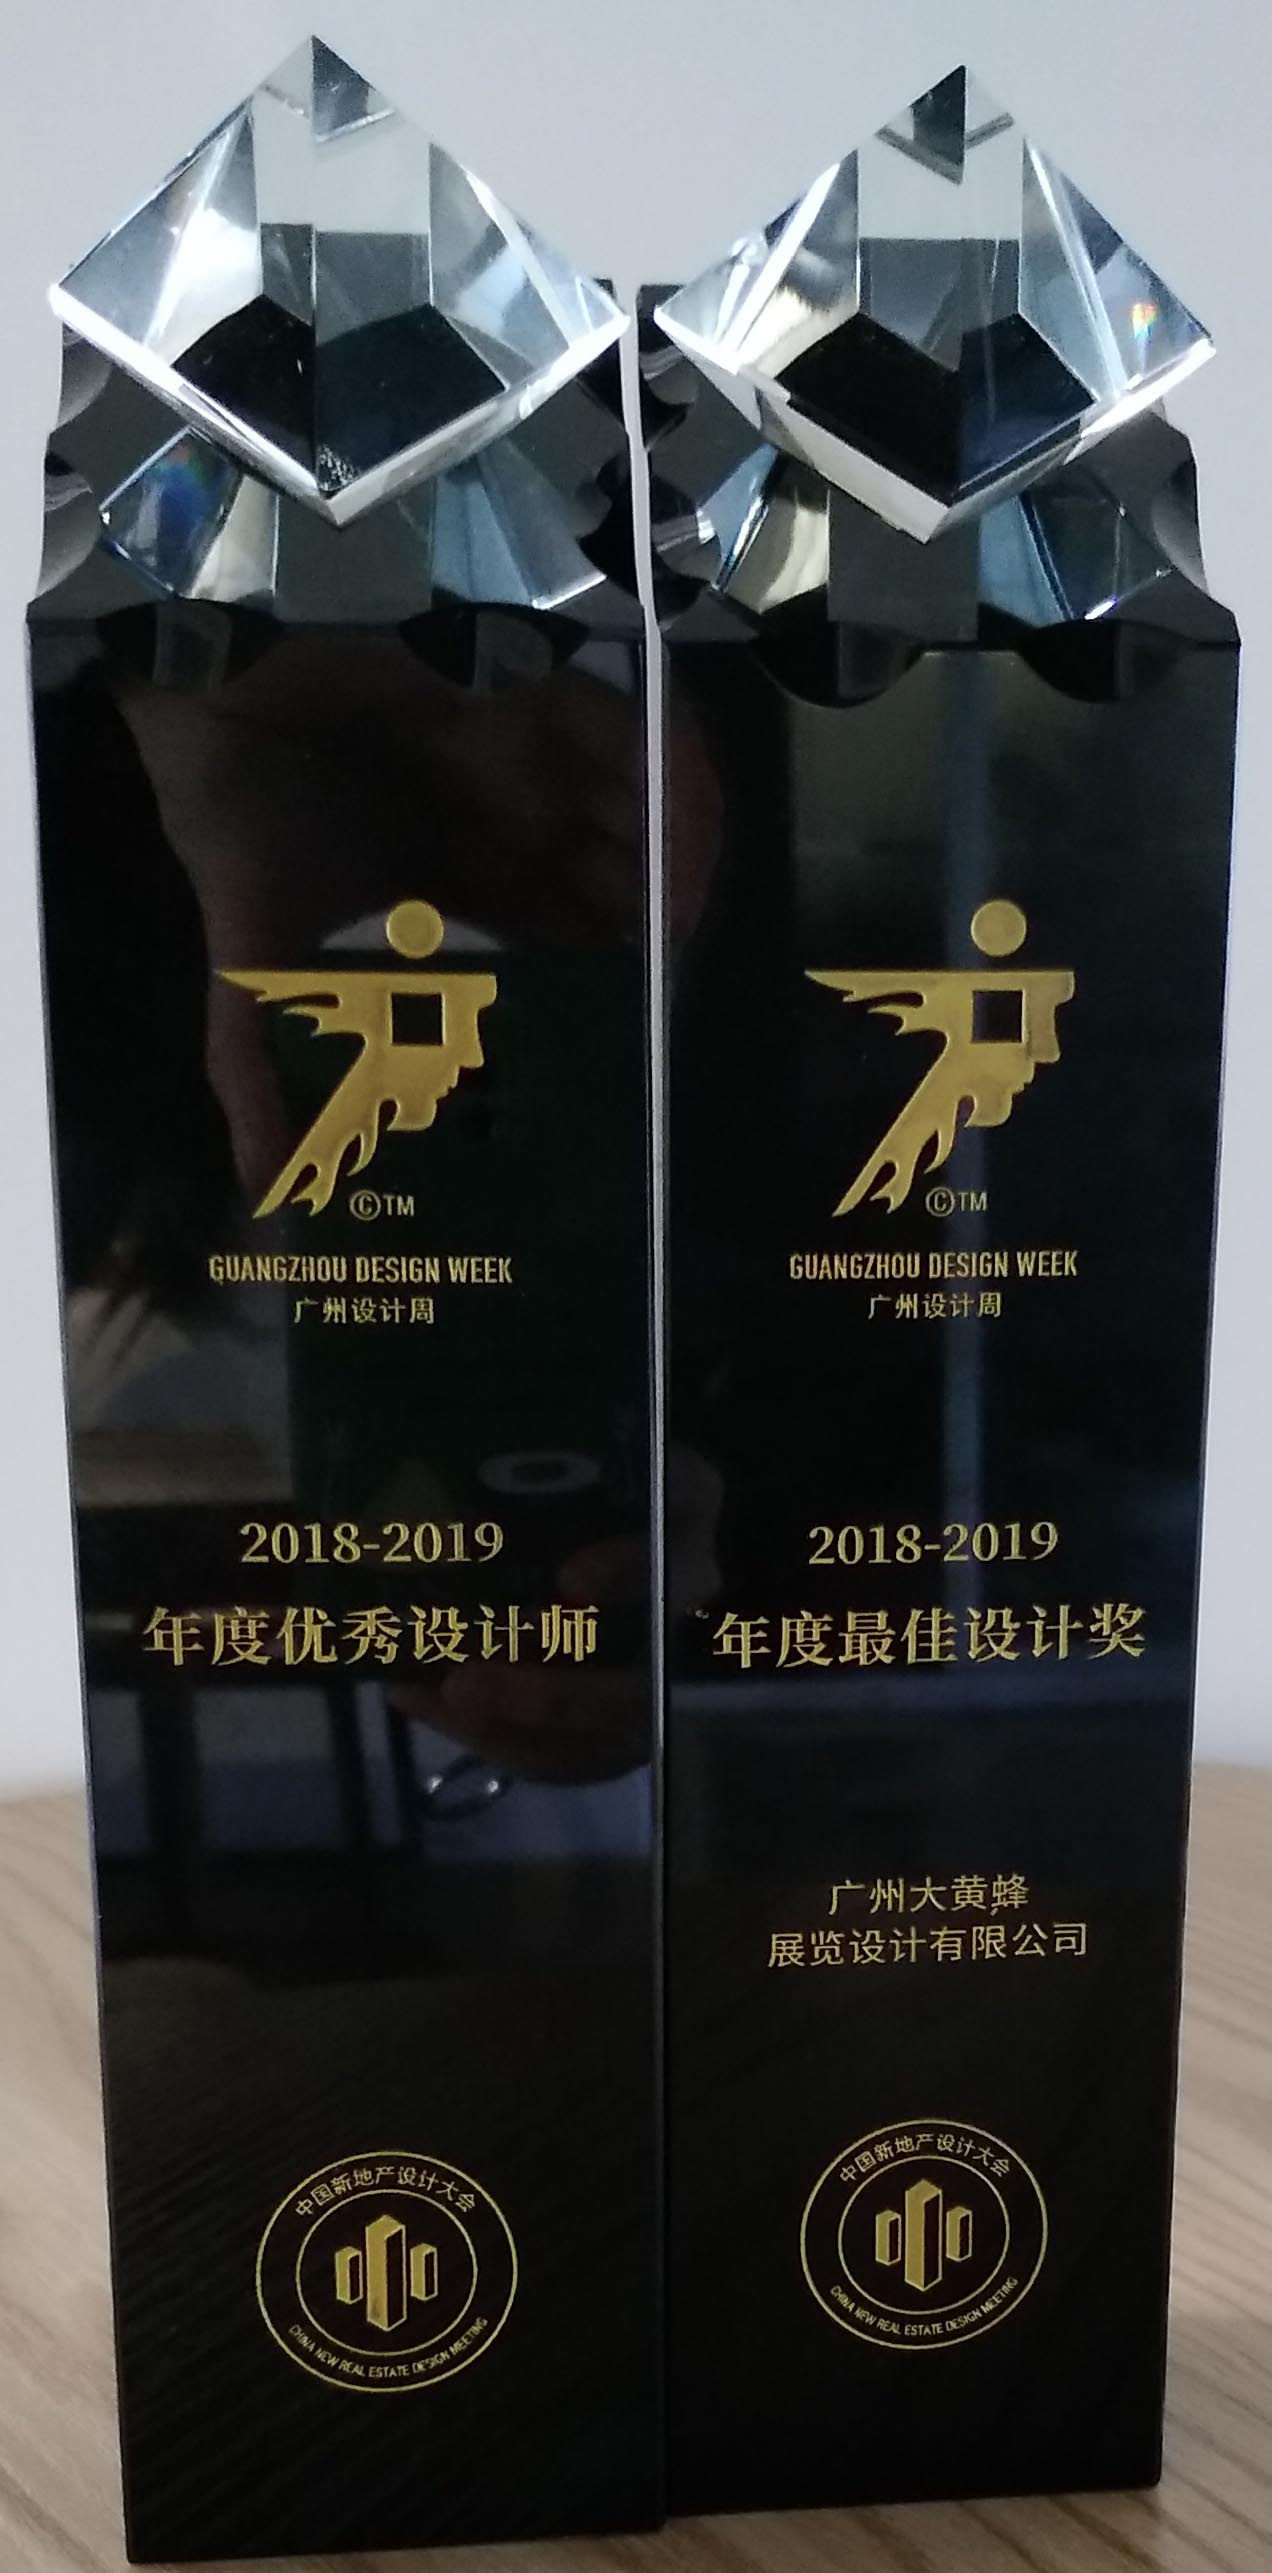 大黄蜂-2018-2019广州设计周年度最佳设计奖、年度优秀设计师